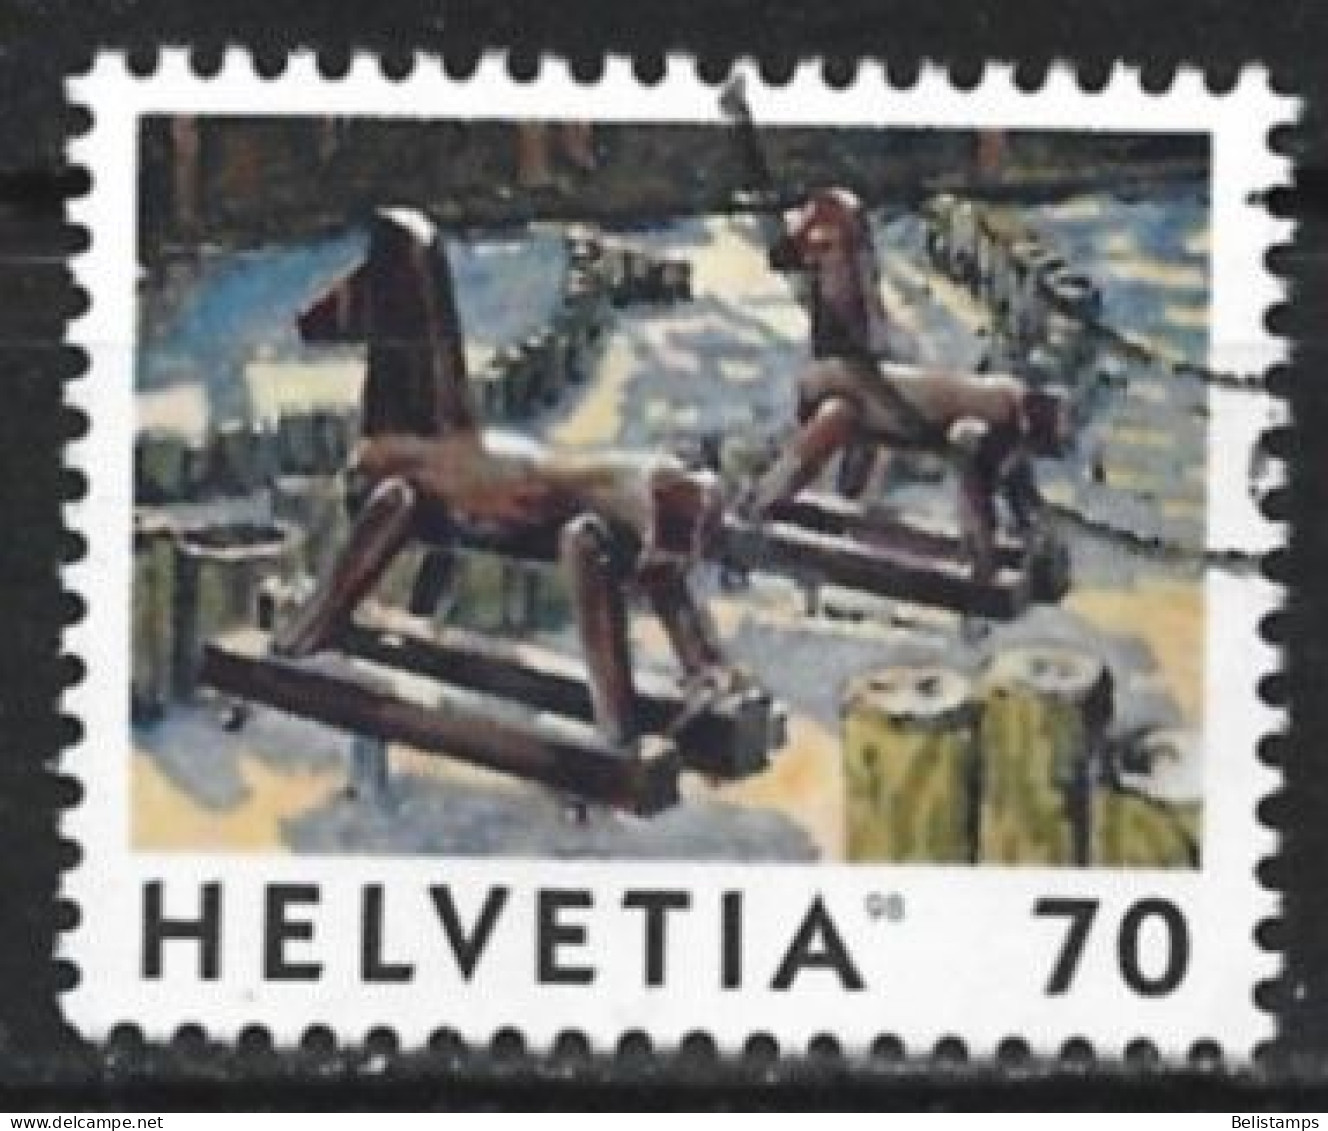 Switzerland 1998. Scott #1022 (U) Hobbyhorses, Posts - Usati